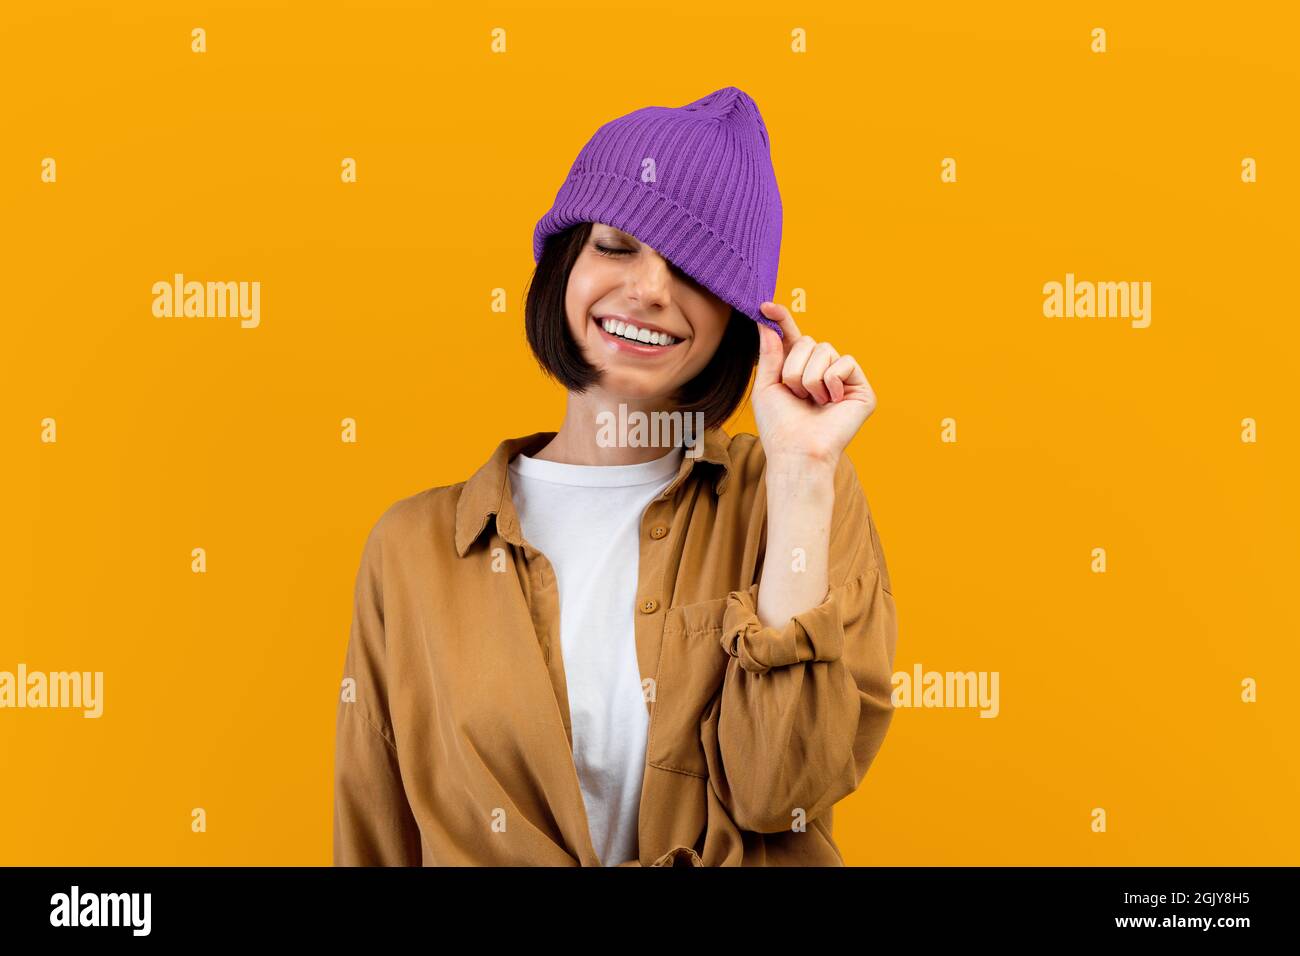 Bonne jeune femme tirant vers le bas chapeau violet tendance, fermant un oeil et souriant large, fond orange Banque D'Images